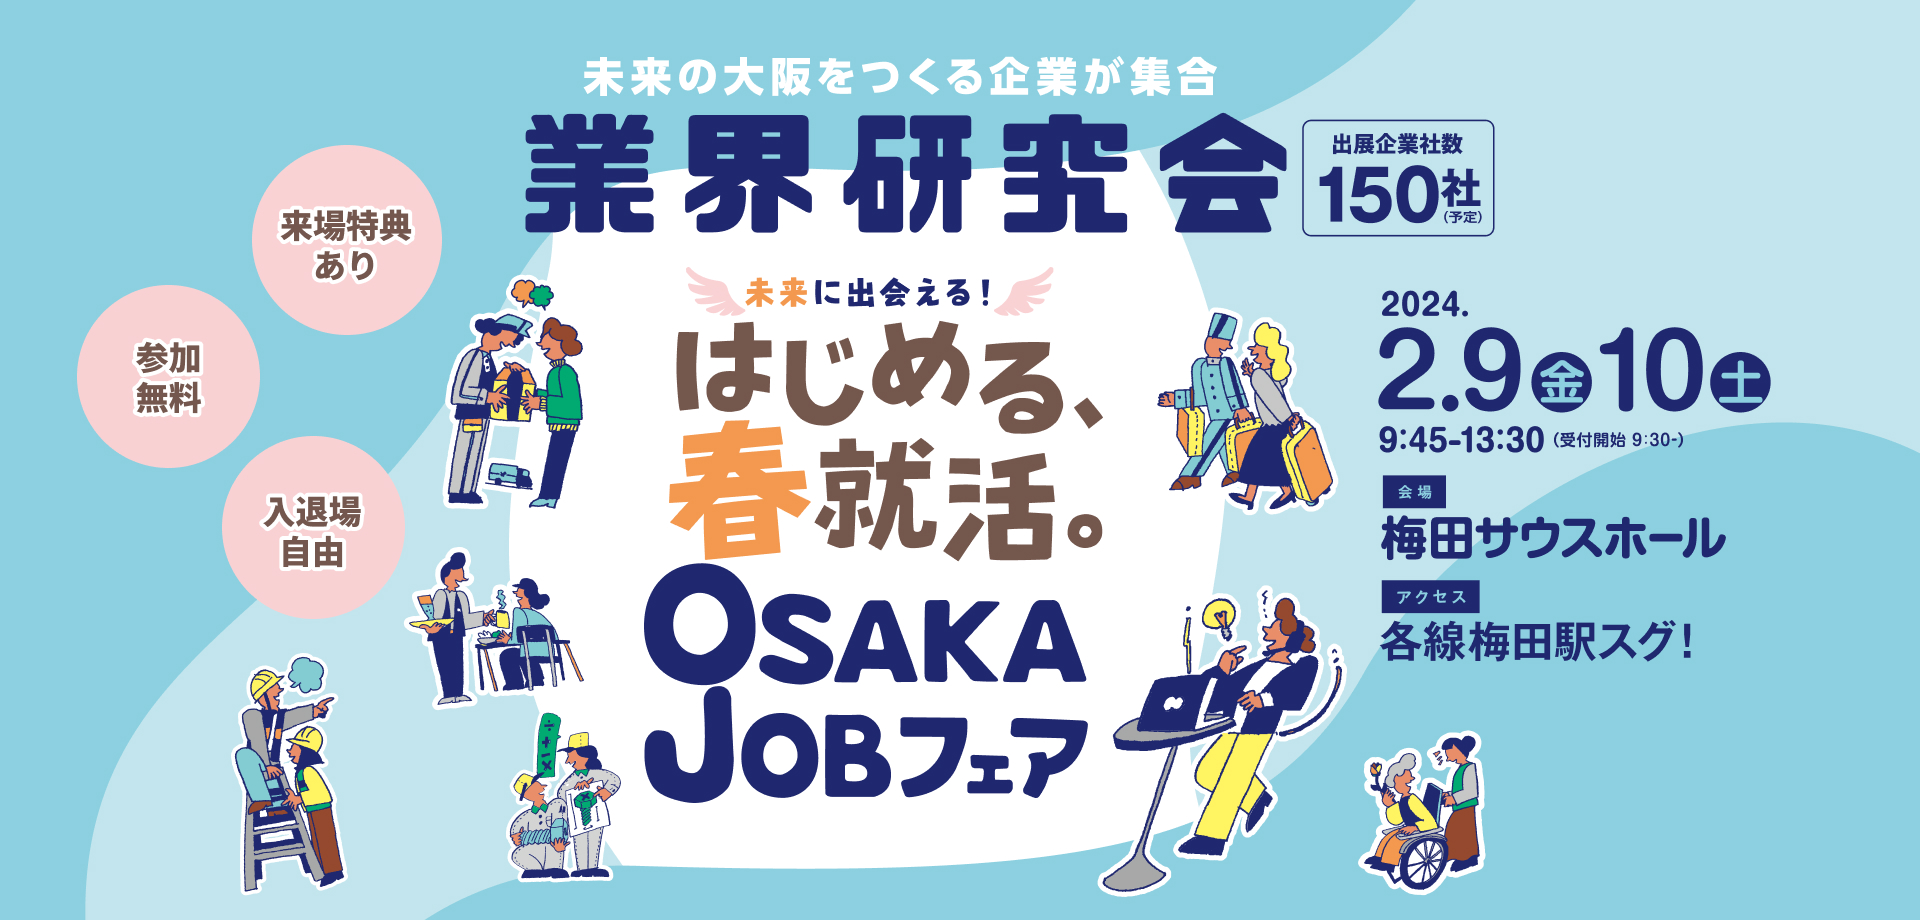 未来の大阪をつくる企業が集結 業界研究会 仕事に出会える！ かなえる、春就職。 OSAKAJobフェア